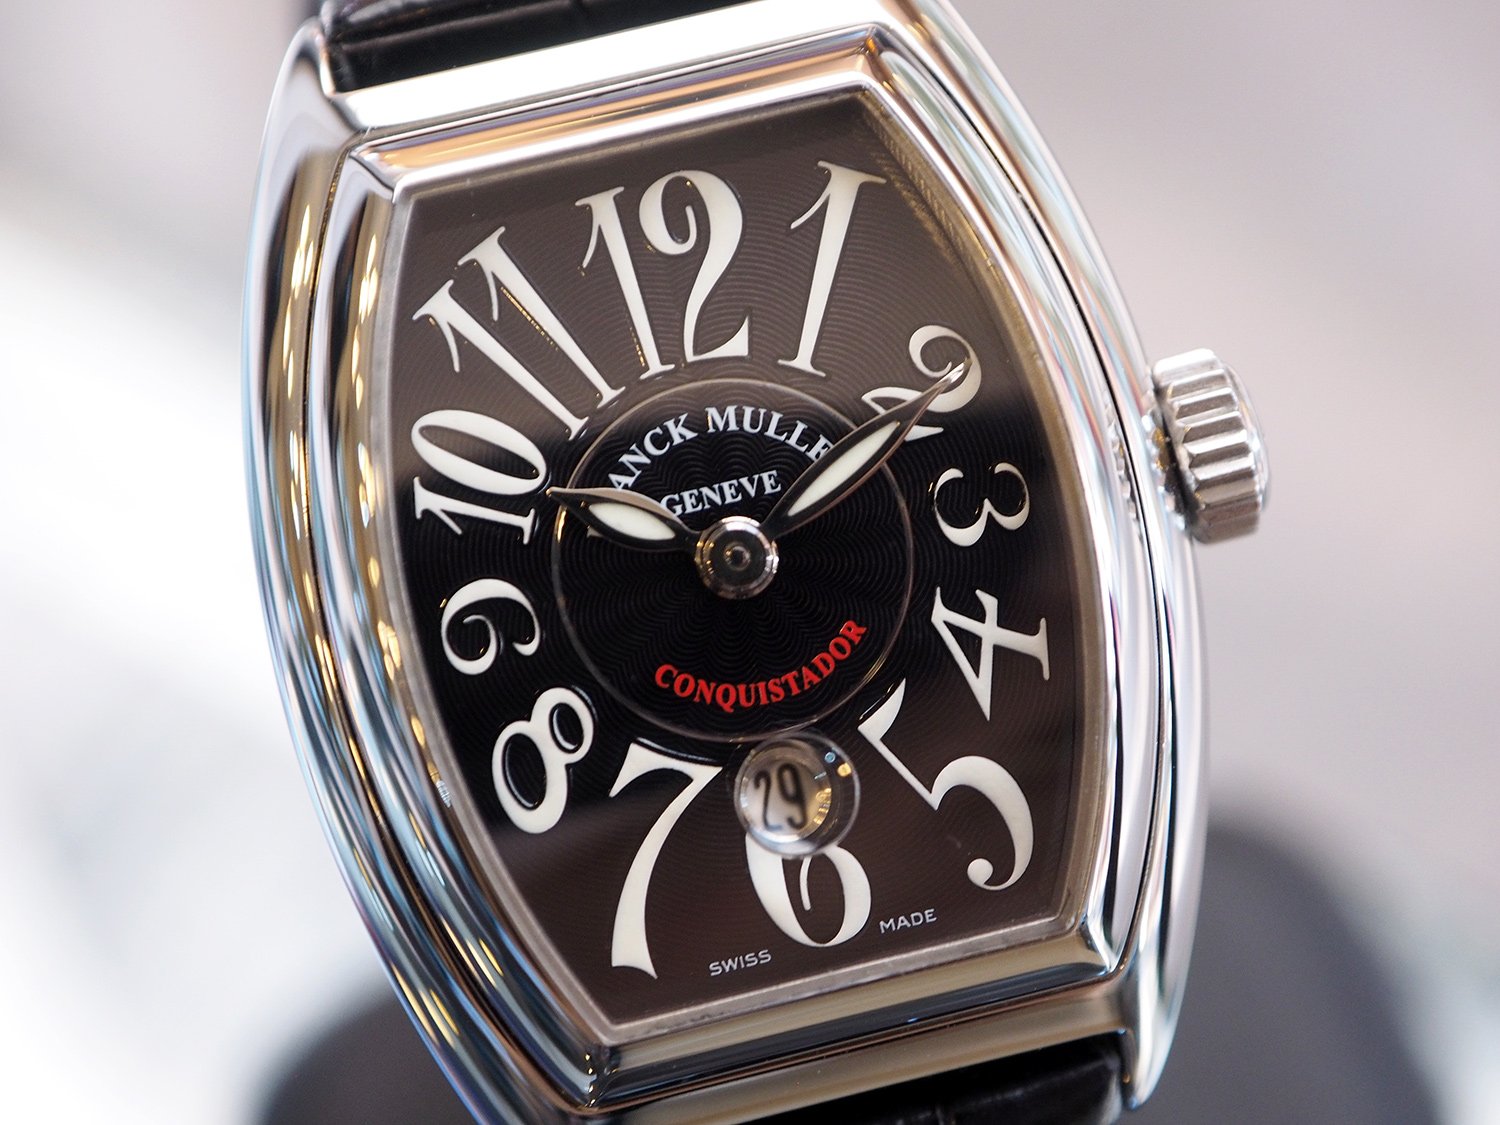 Фрэнк мюллер. Франк Мюллер Женева. Часы Франк Мюллер Geneve. Фрэнк Мюллер Женева часы. Часы Franck Muller 1932.